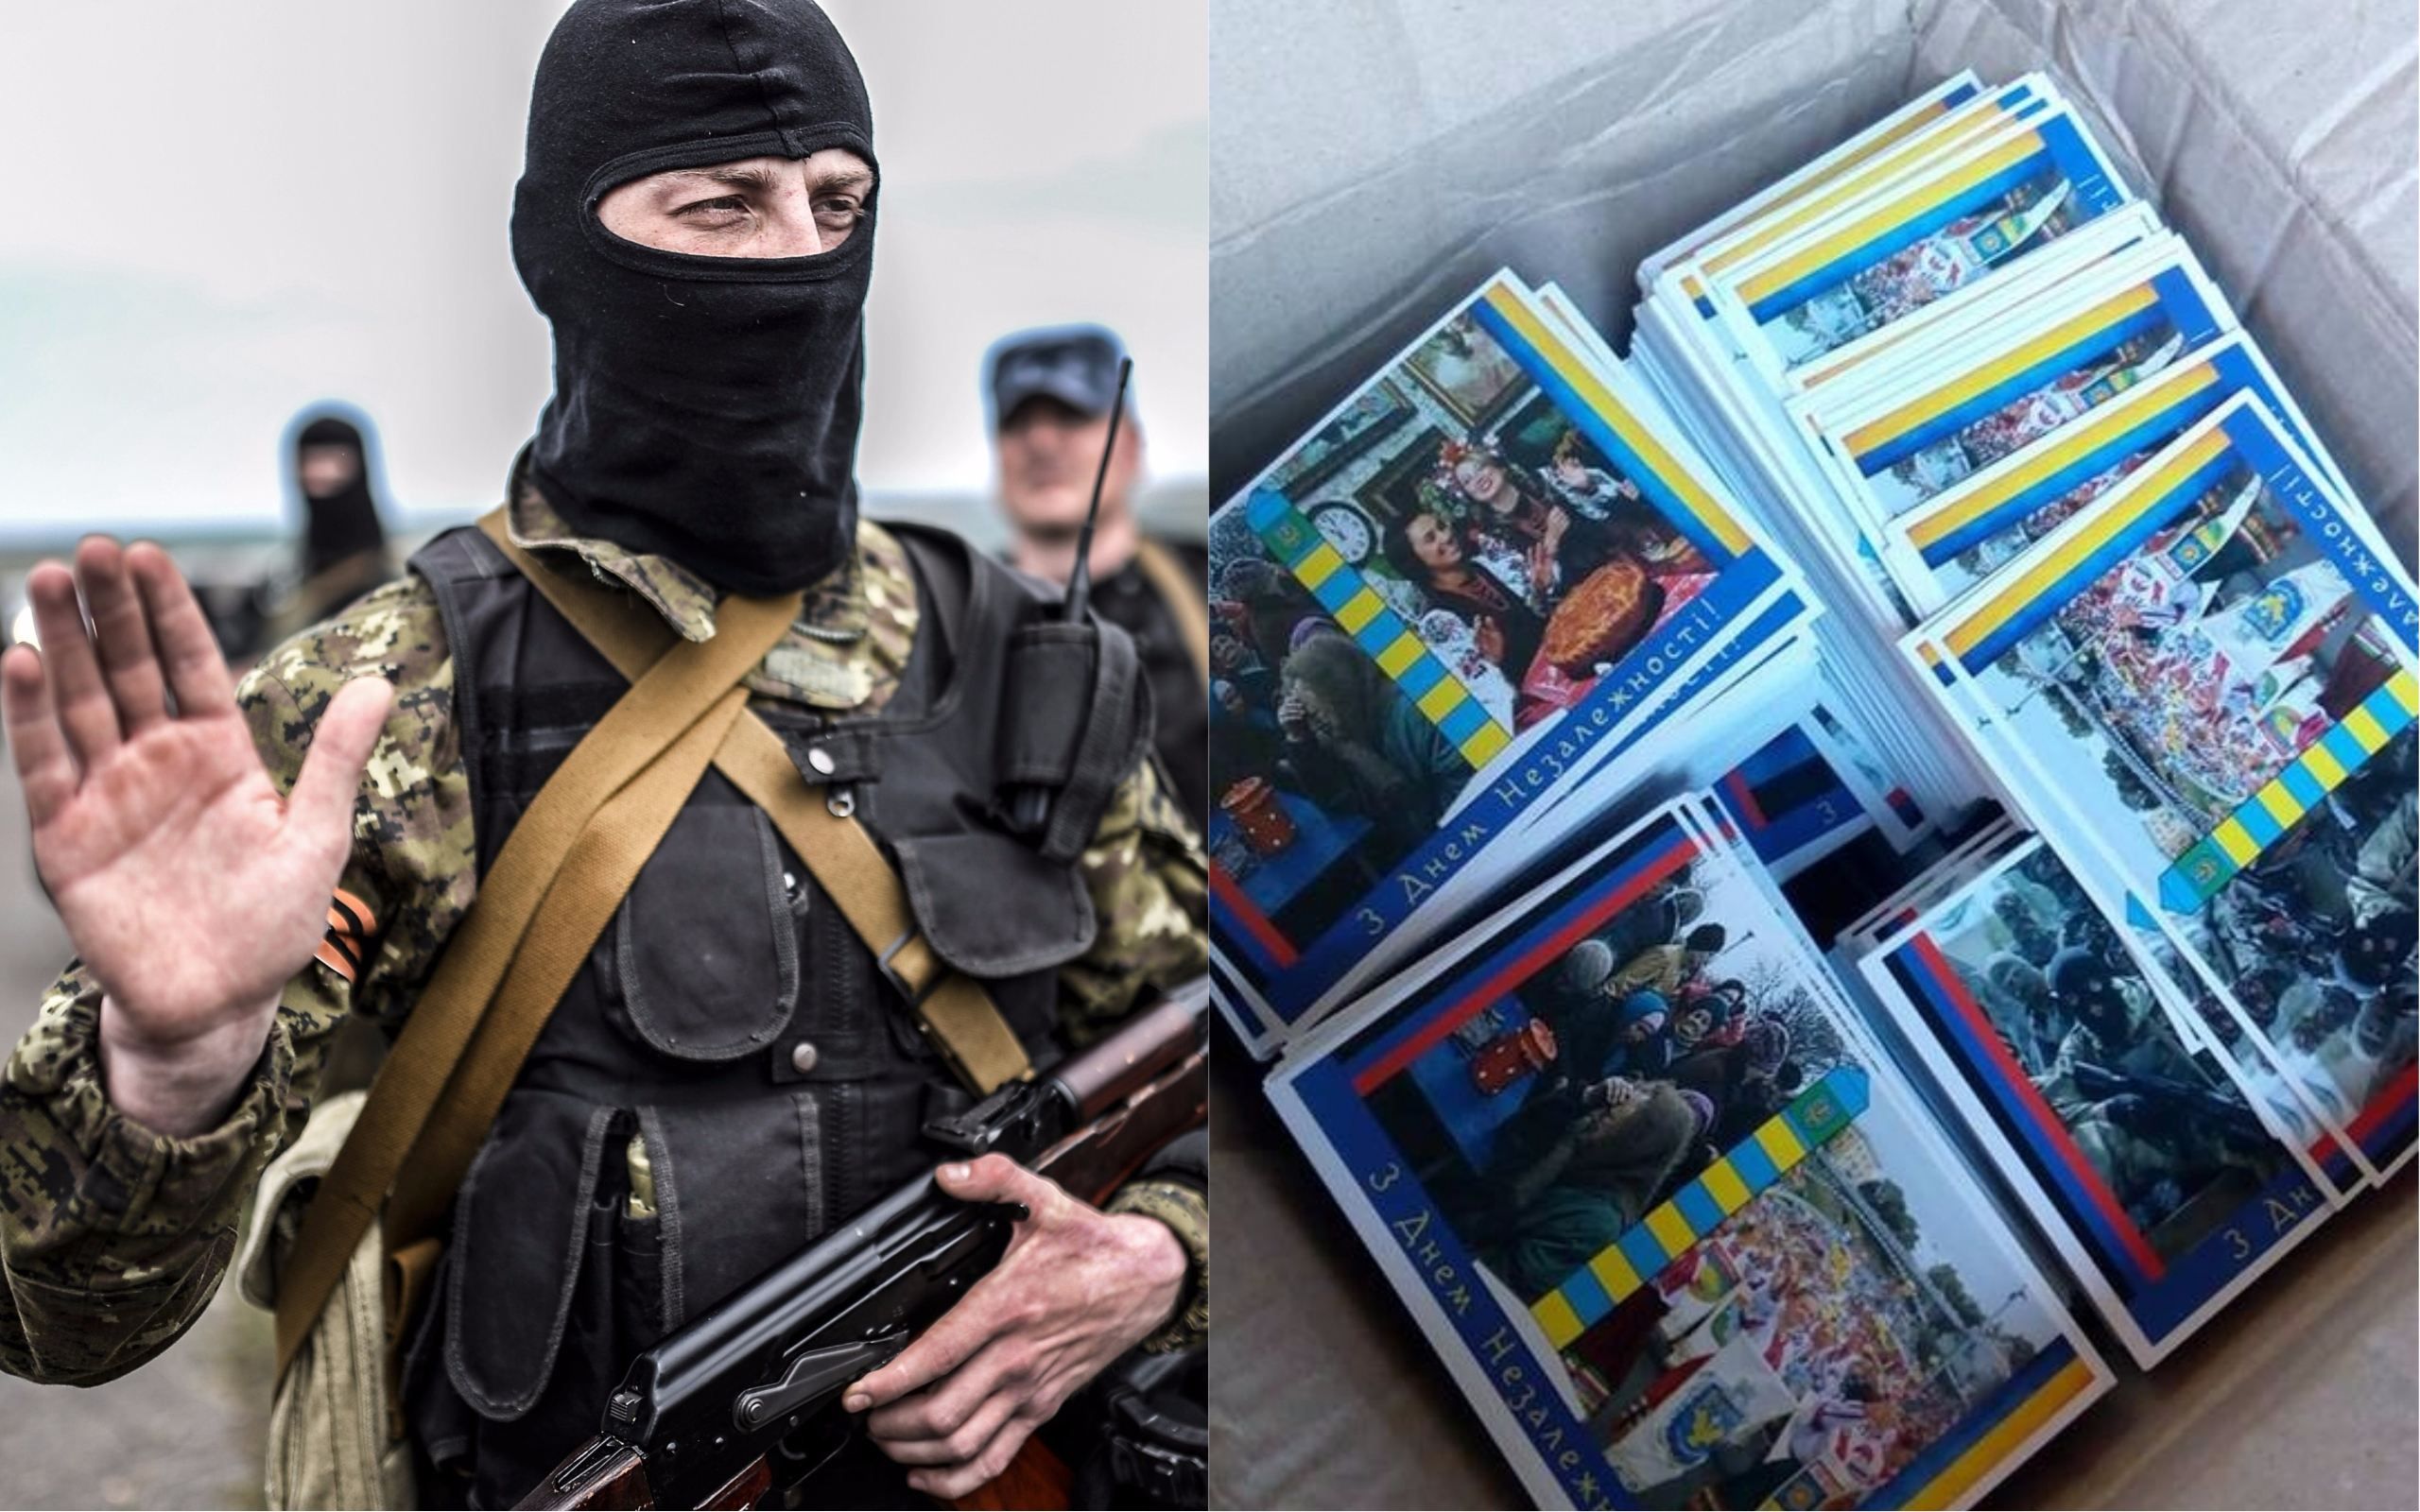 Боевики бьют тревогу из-за проукраинских листовок в Донецке, – Тымчук